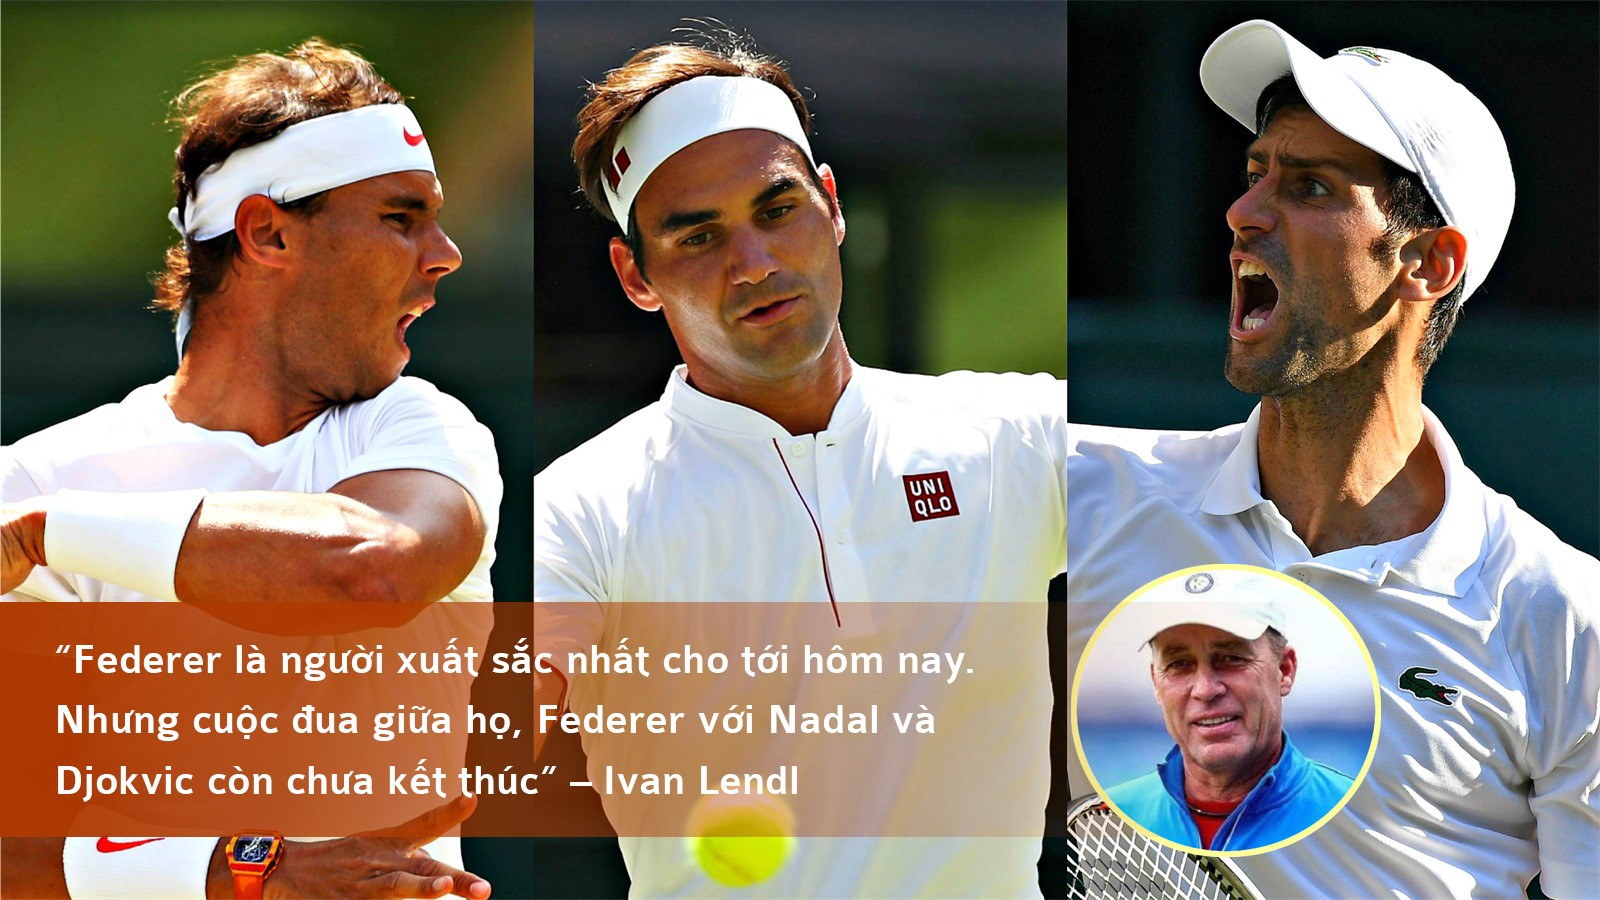 Federer, Nadal, Djokovic: Trật tự nào chính xác cho bộ 3 huyền thoại? (Bài 2) - 4